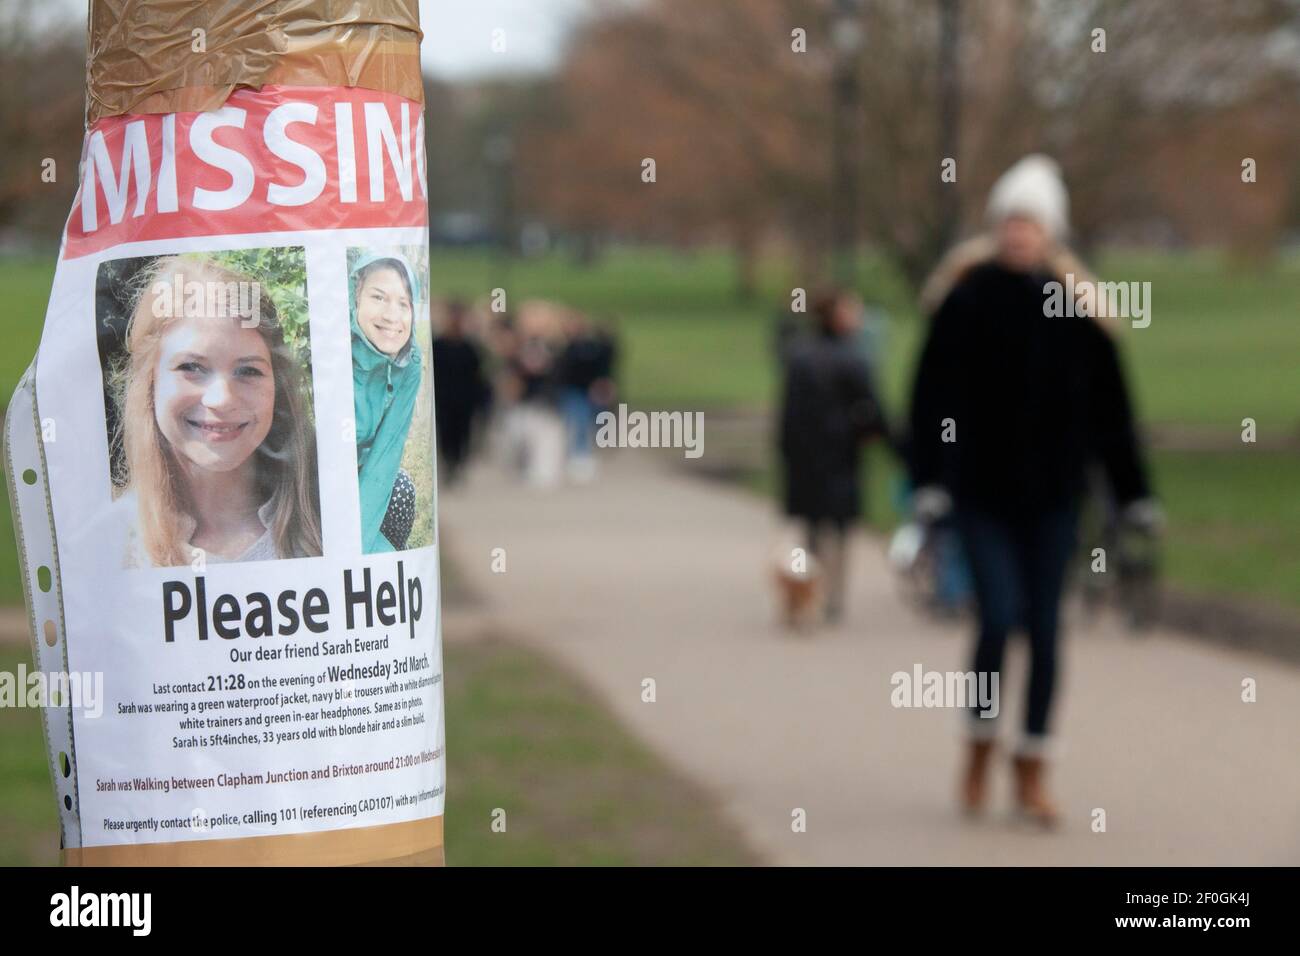 Londres, Royaume-Uni, 7 mars 2021: Affiches appel à l'aide pour trouver la femme disparue Sarah Everard. On n'a pas entendu parler de l'enfant de 33 ans depuis mercredi soir, quand elle est entrée à pied. Anna Watson/Alay Live News Banque D'Images